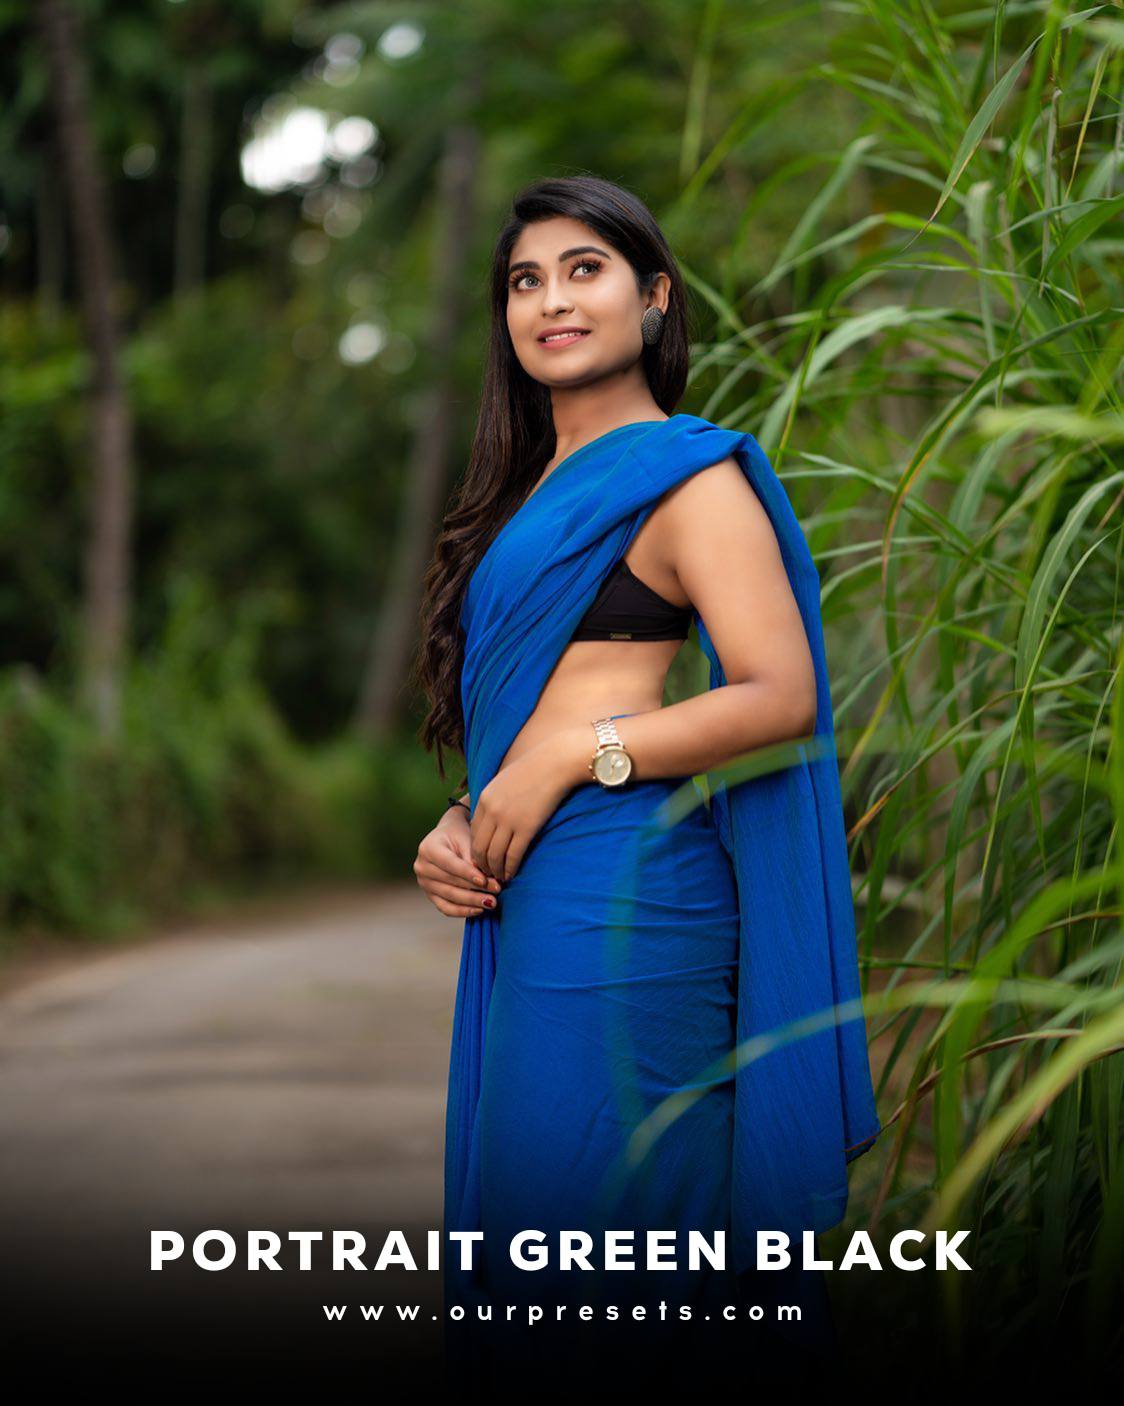 Portrait green black lightroom presets